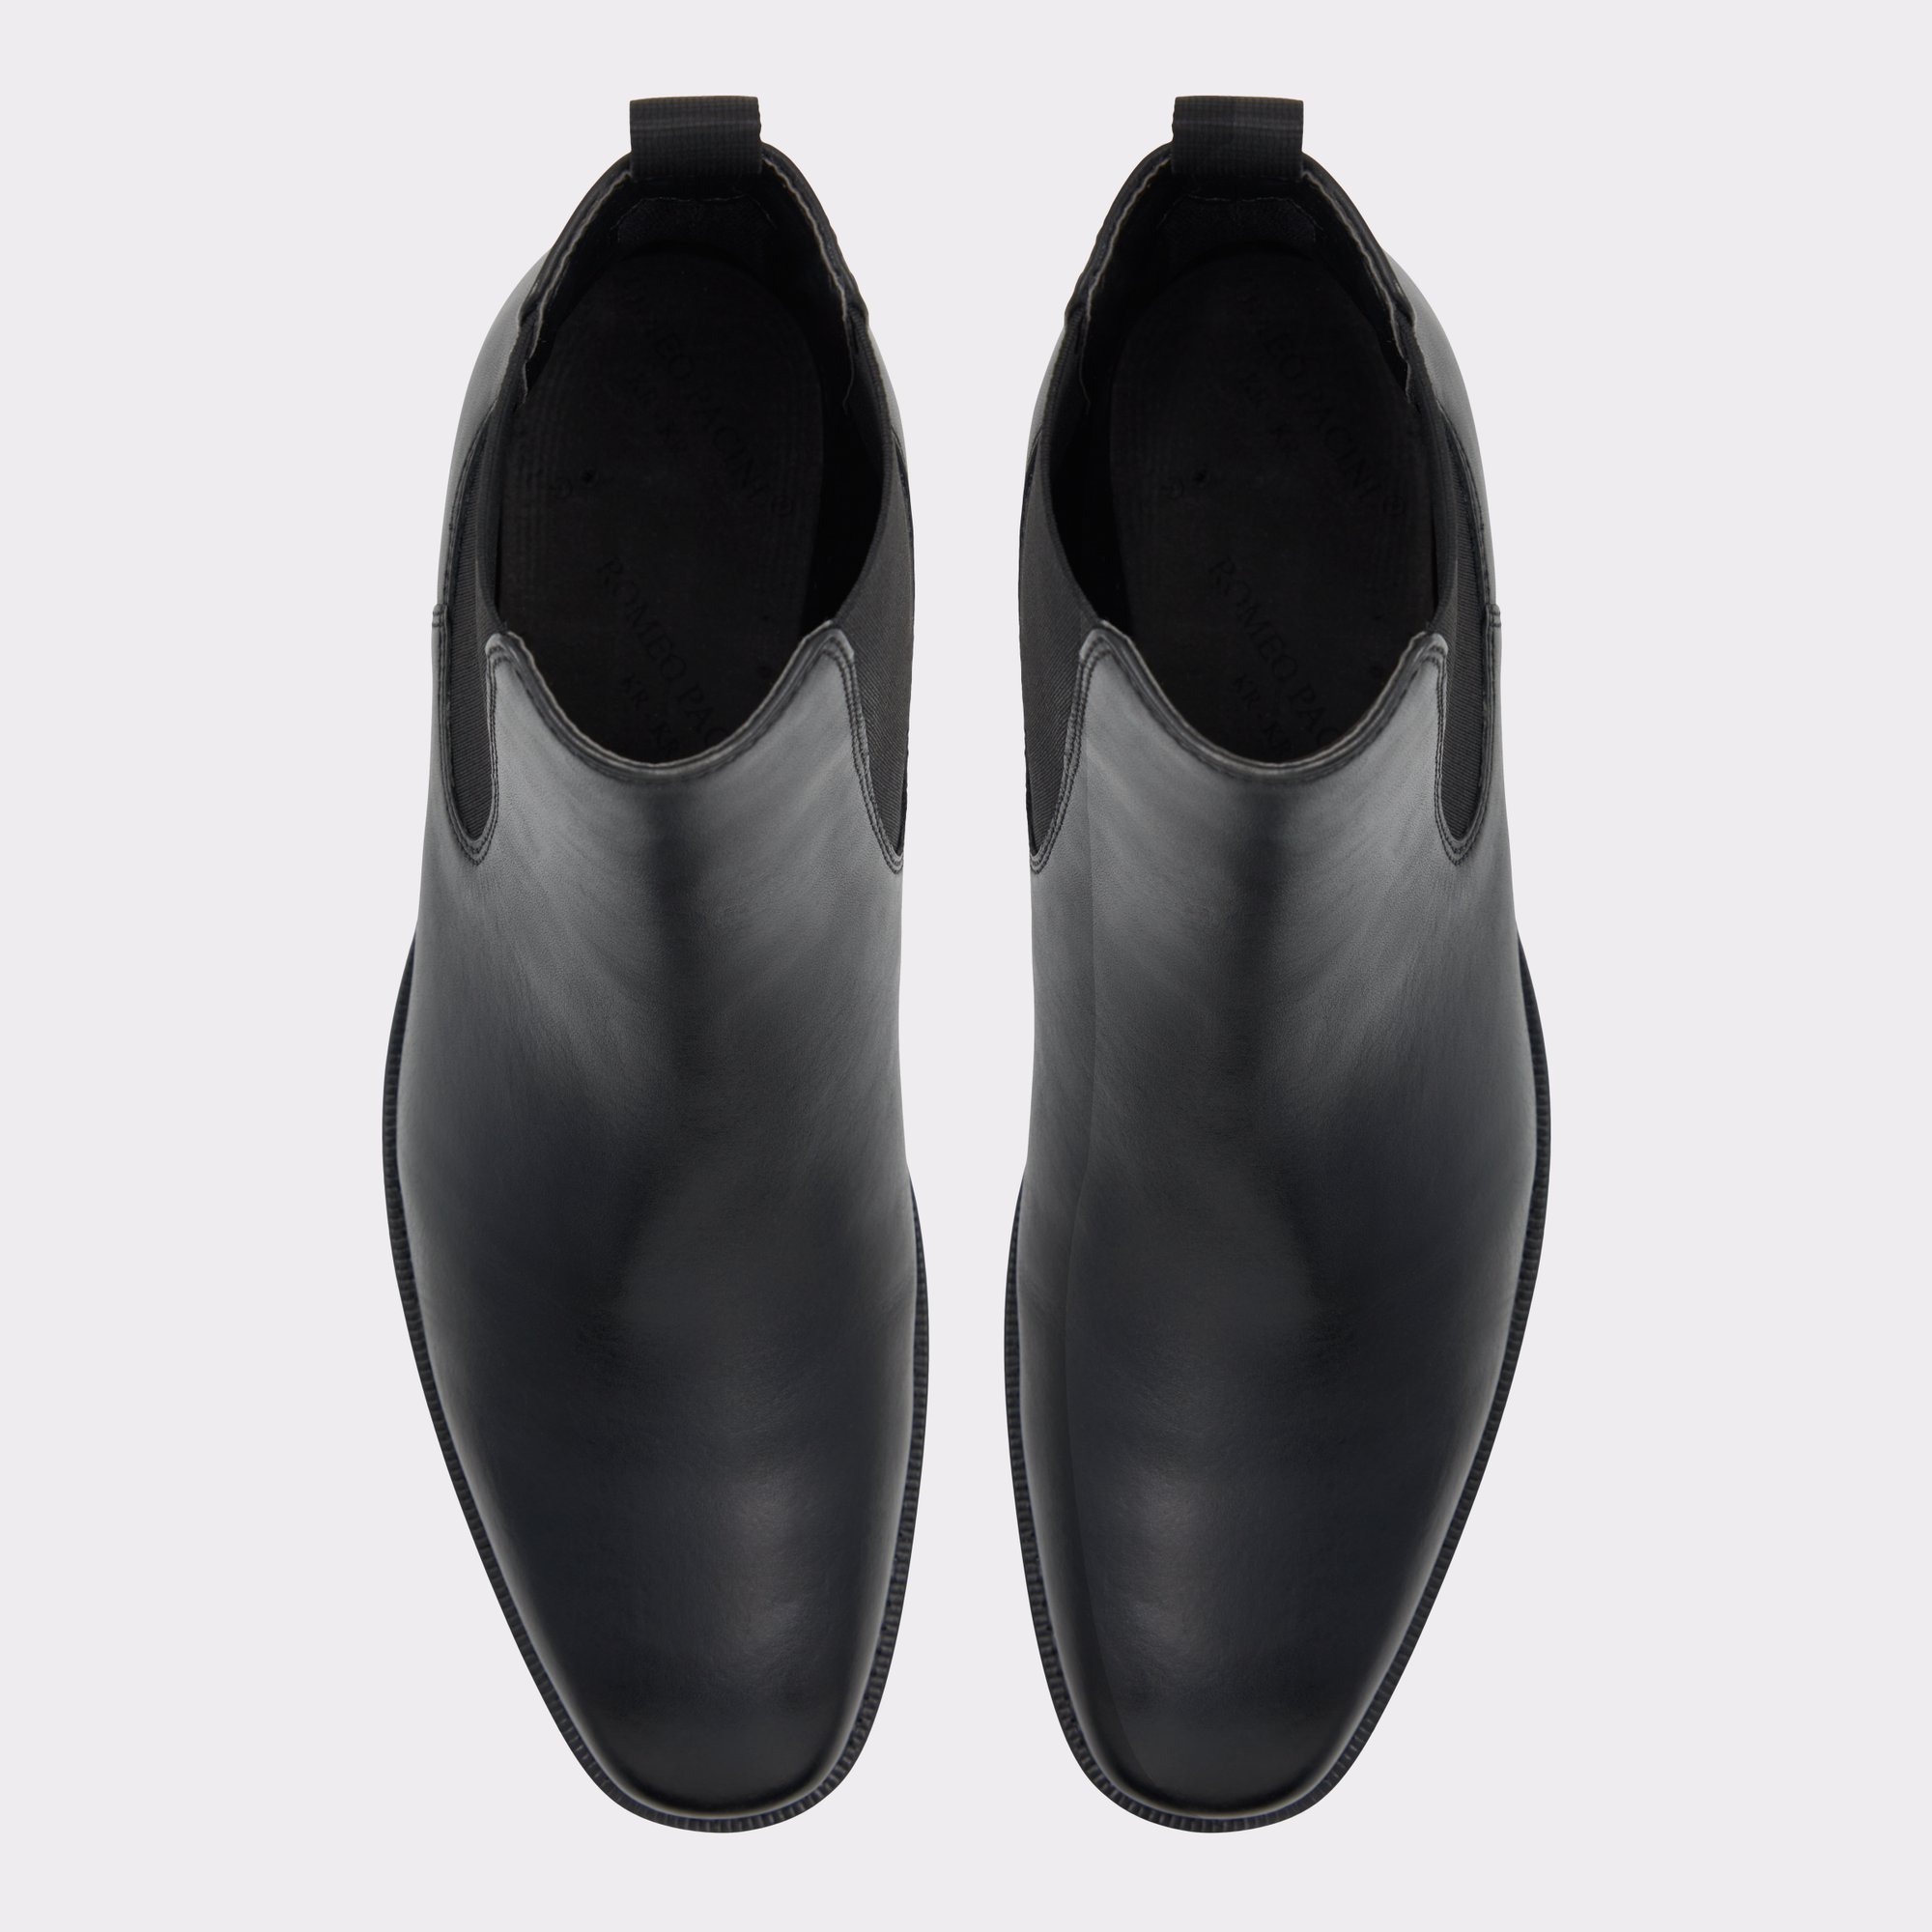 Men - Black Chelsea Boots - Size: 12 - H&M